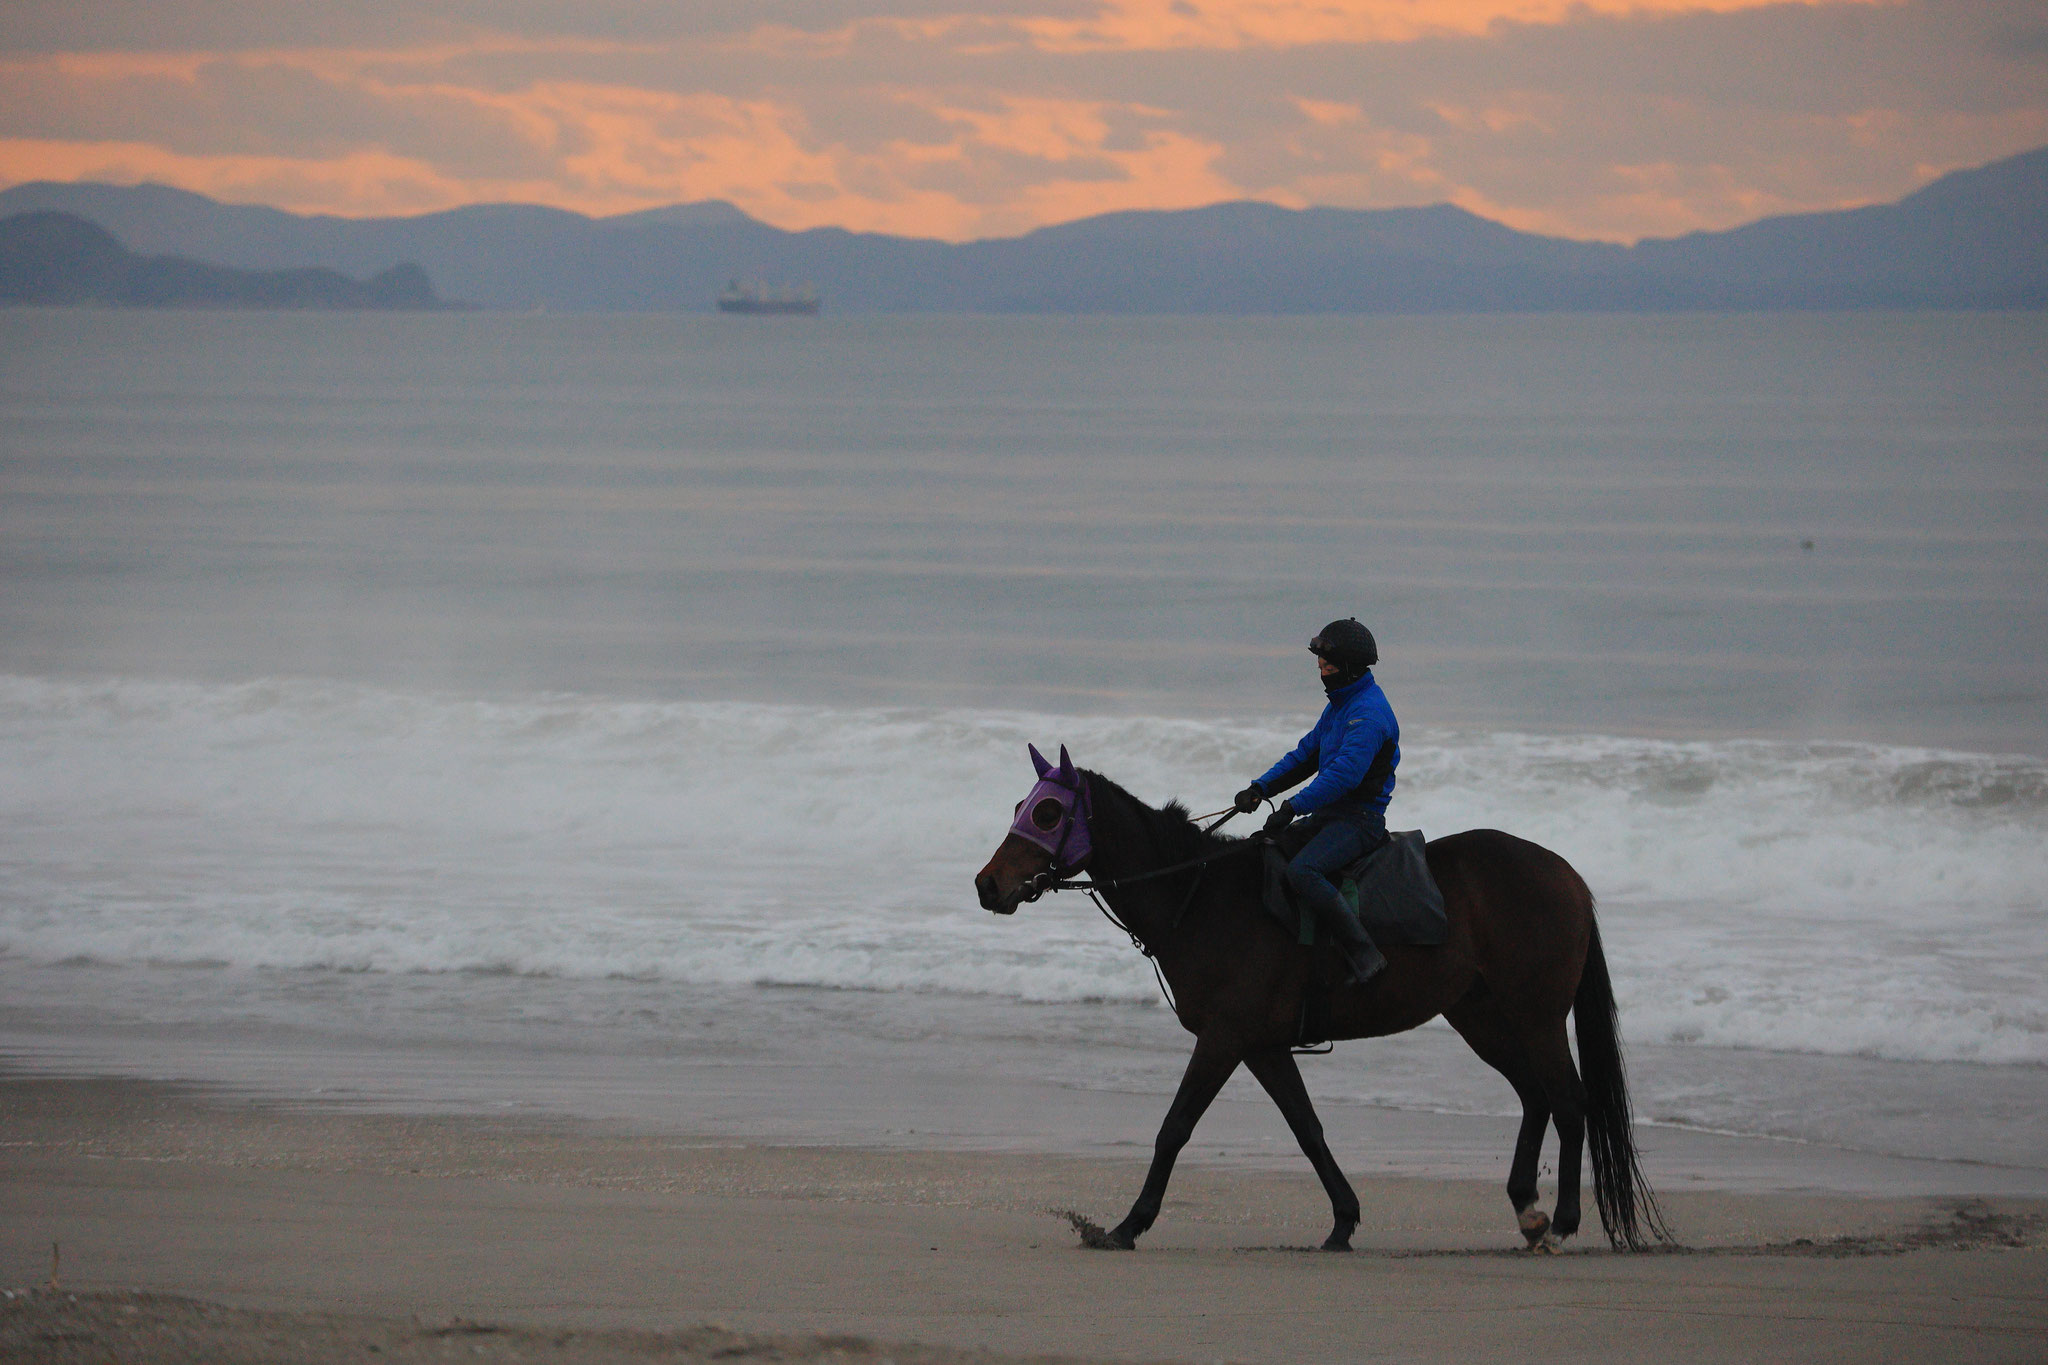 柏原海岸でトレーニングの競走馬(2月11日 東串良町)